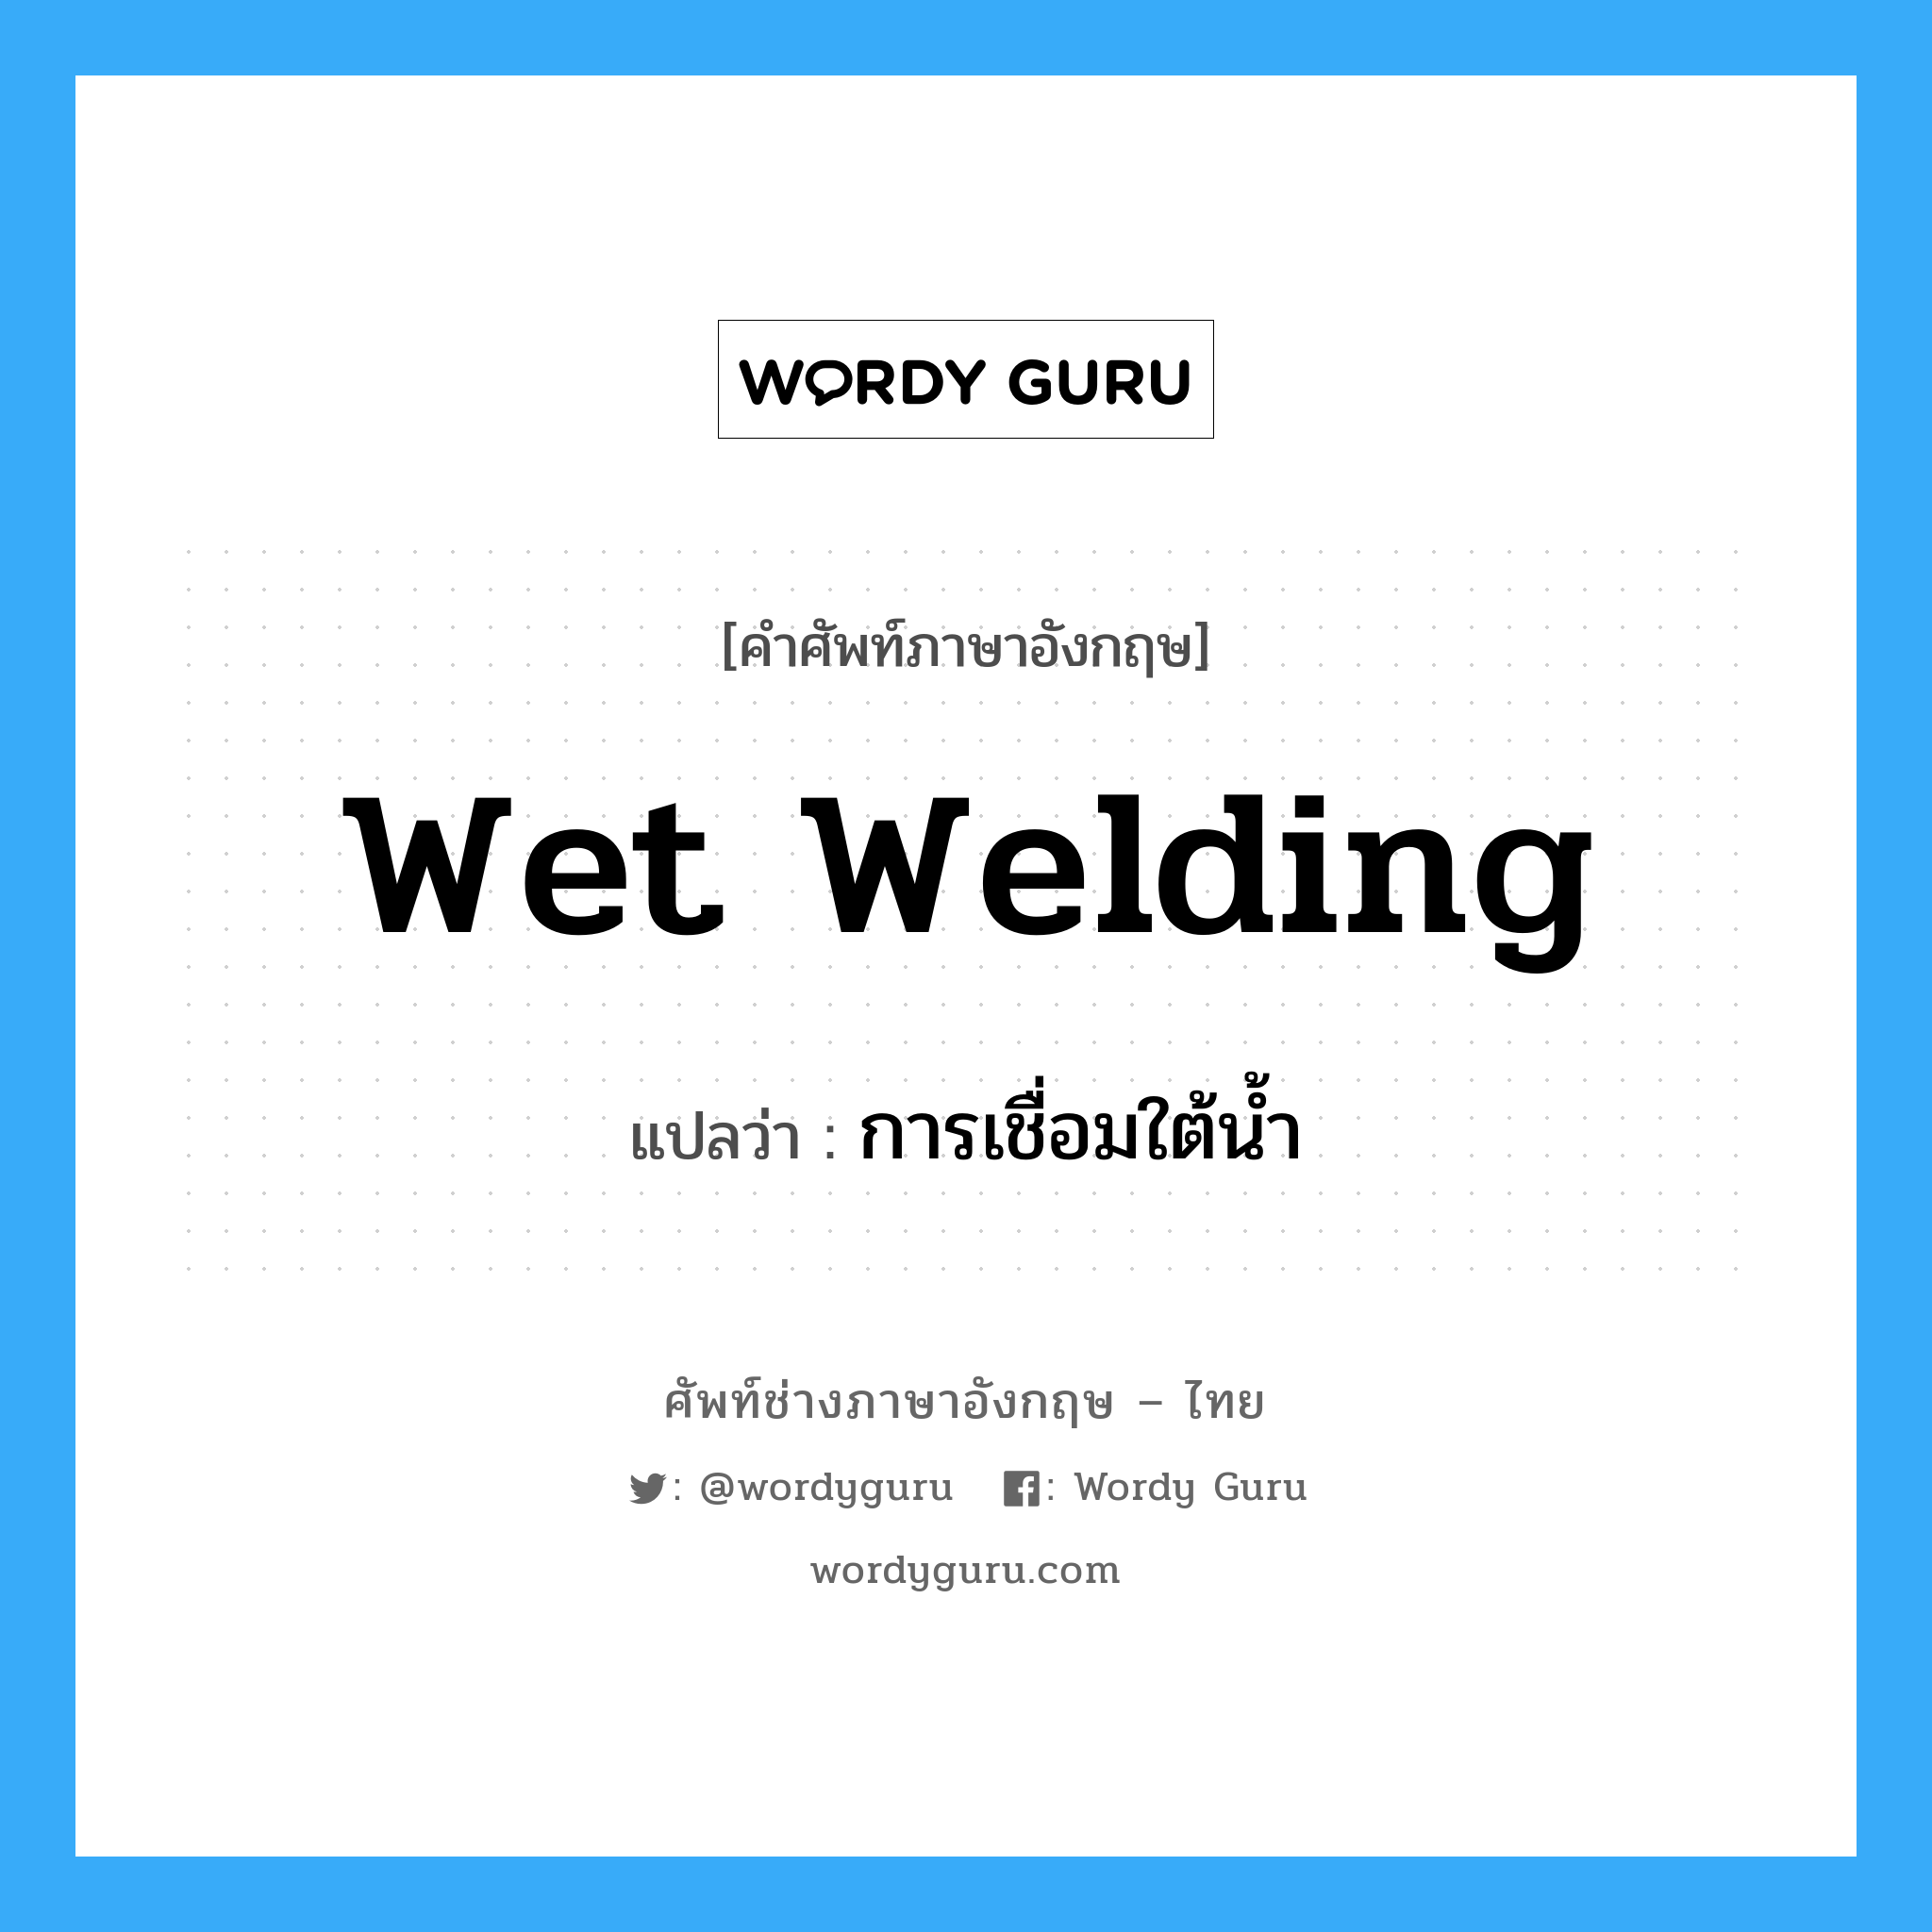 การเชื่อมใต้น้ำ ภาษาอังกฤษ?, คำศัพท์ช่างภาษาอังกฤษ - ไทย การเชื่อมใต้น้ำ คำศัพท์ภาษาอังกฤษ การเชื่อมใต้น้ำ แปลว่า wet welding